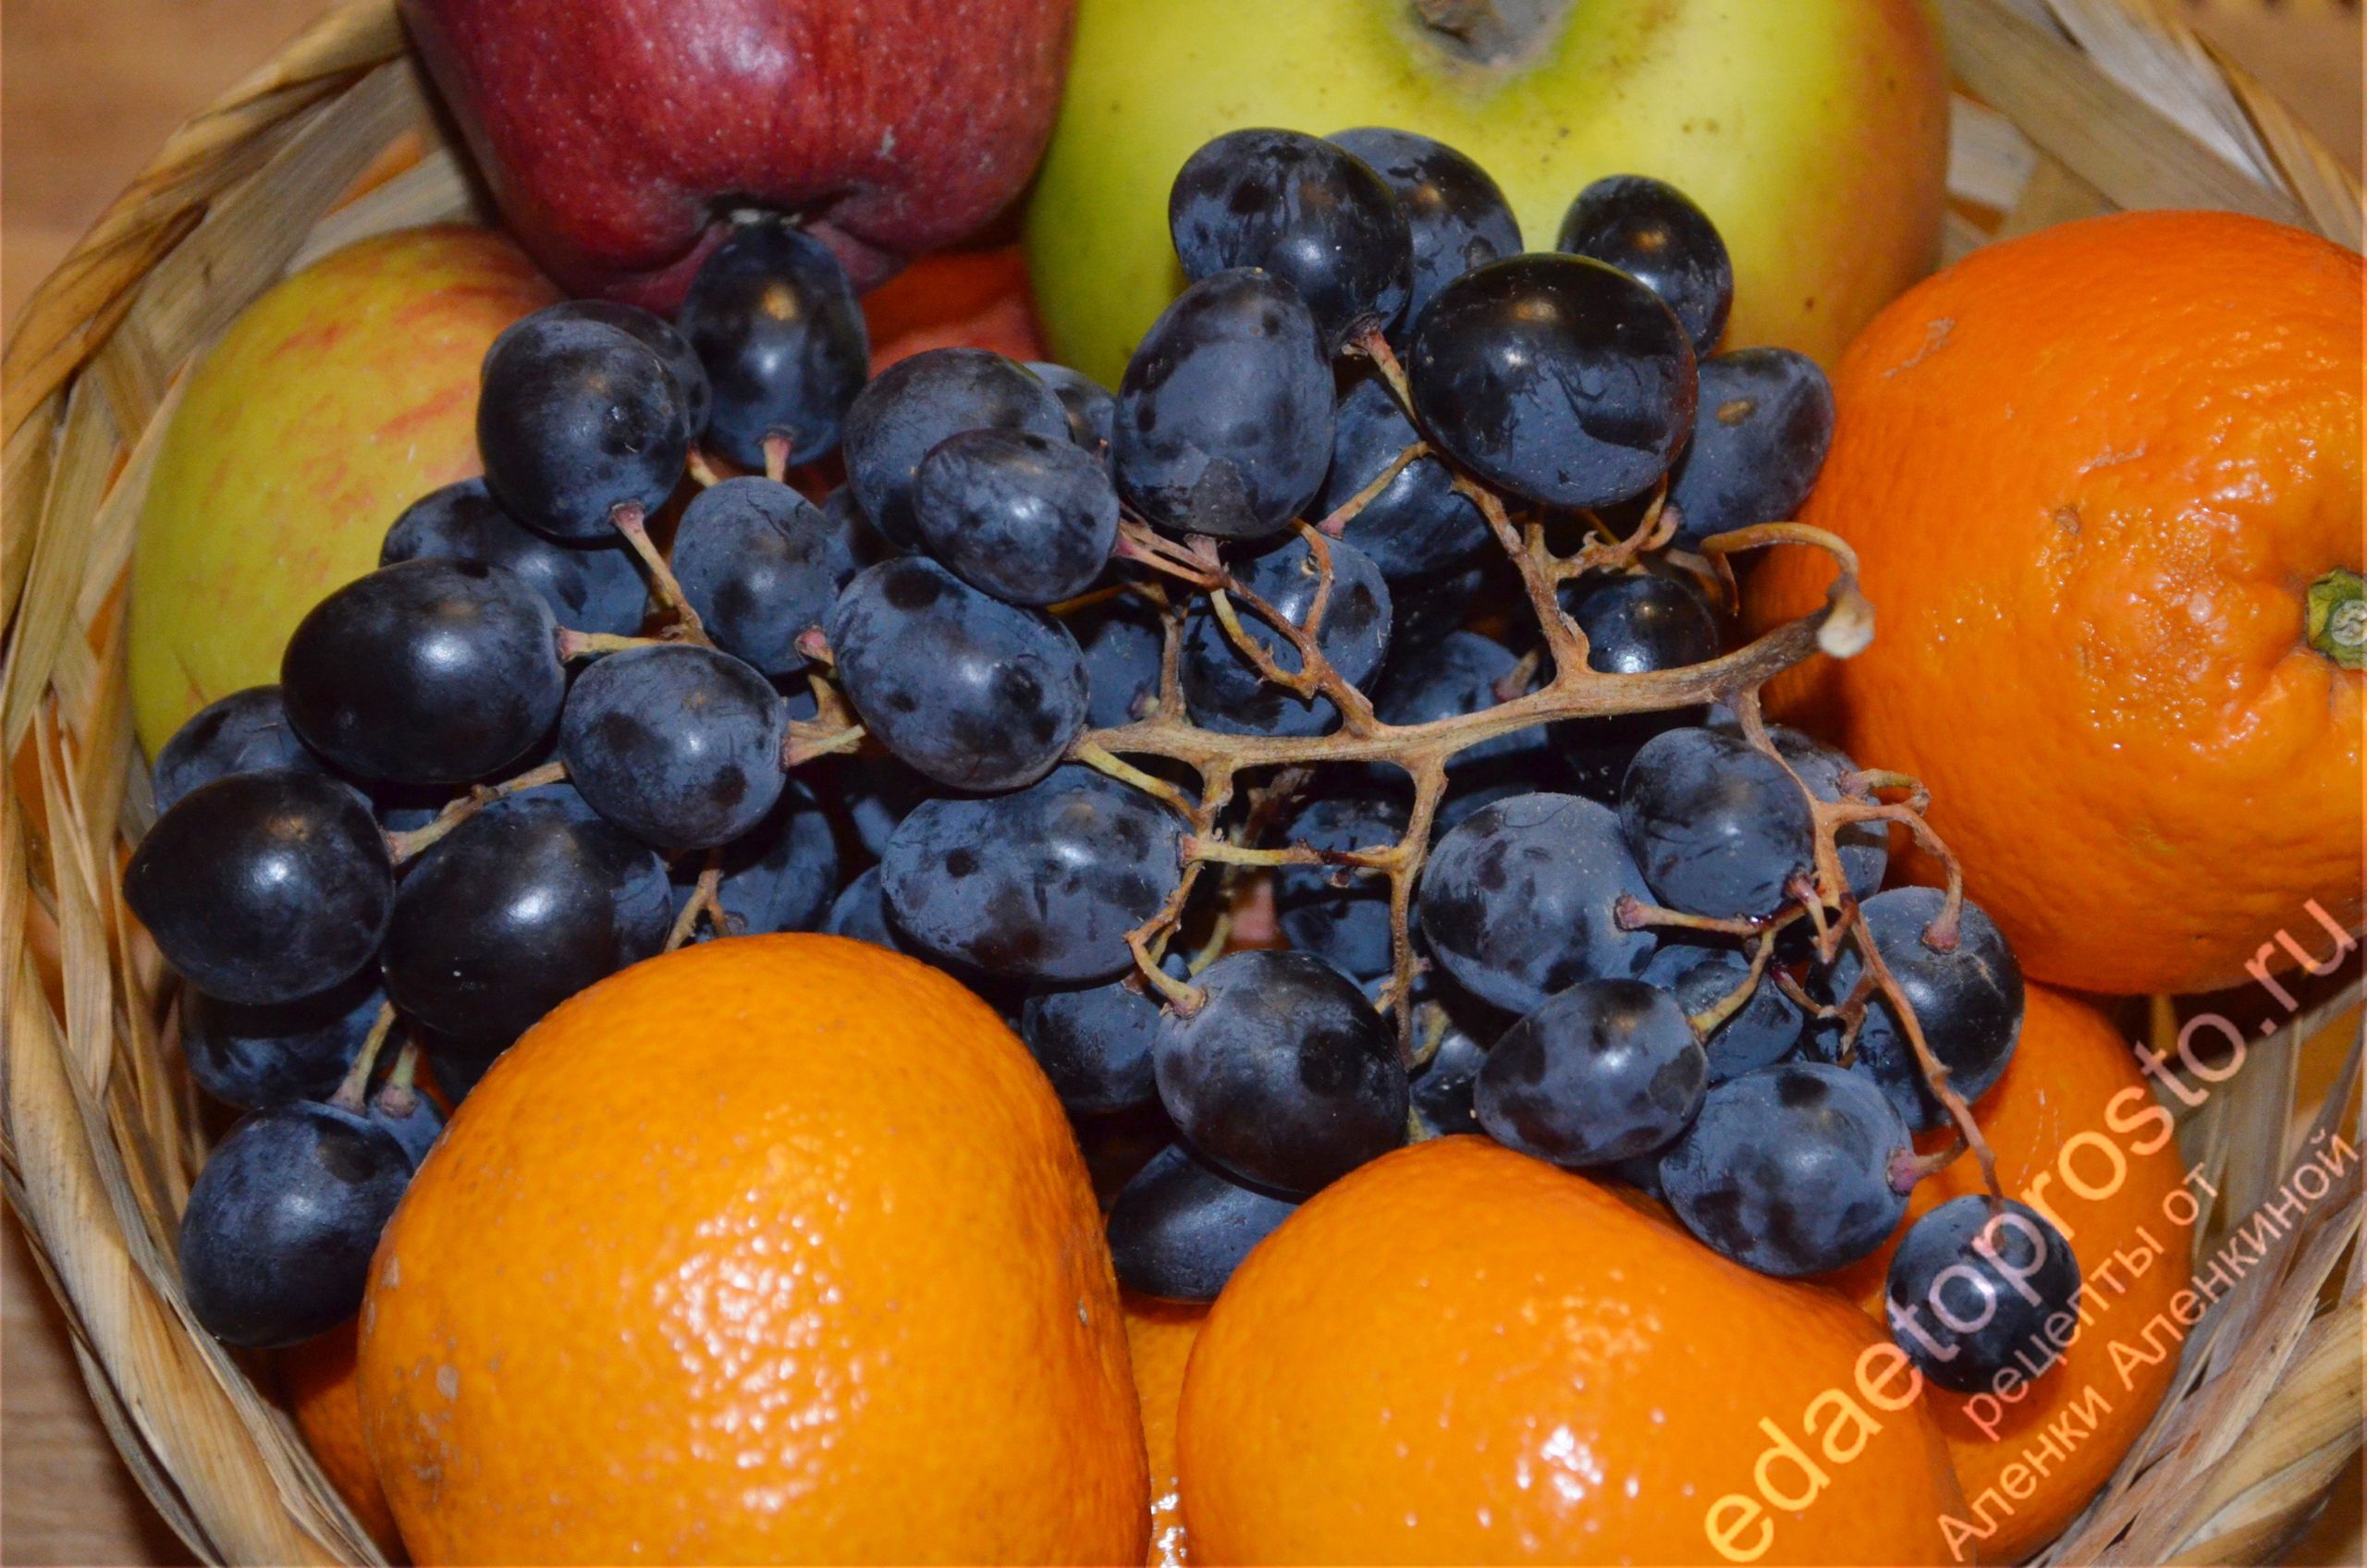 фото винограда, яблок и апельсинов для фруктового салата, красивое  фото блюда из фруктов